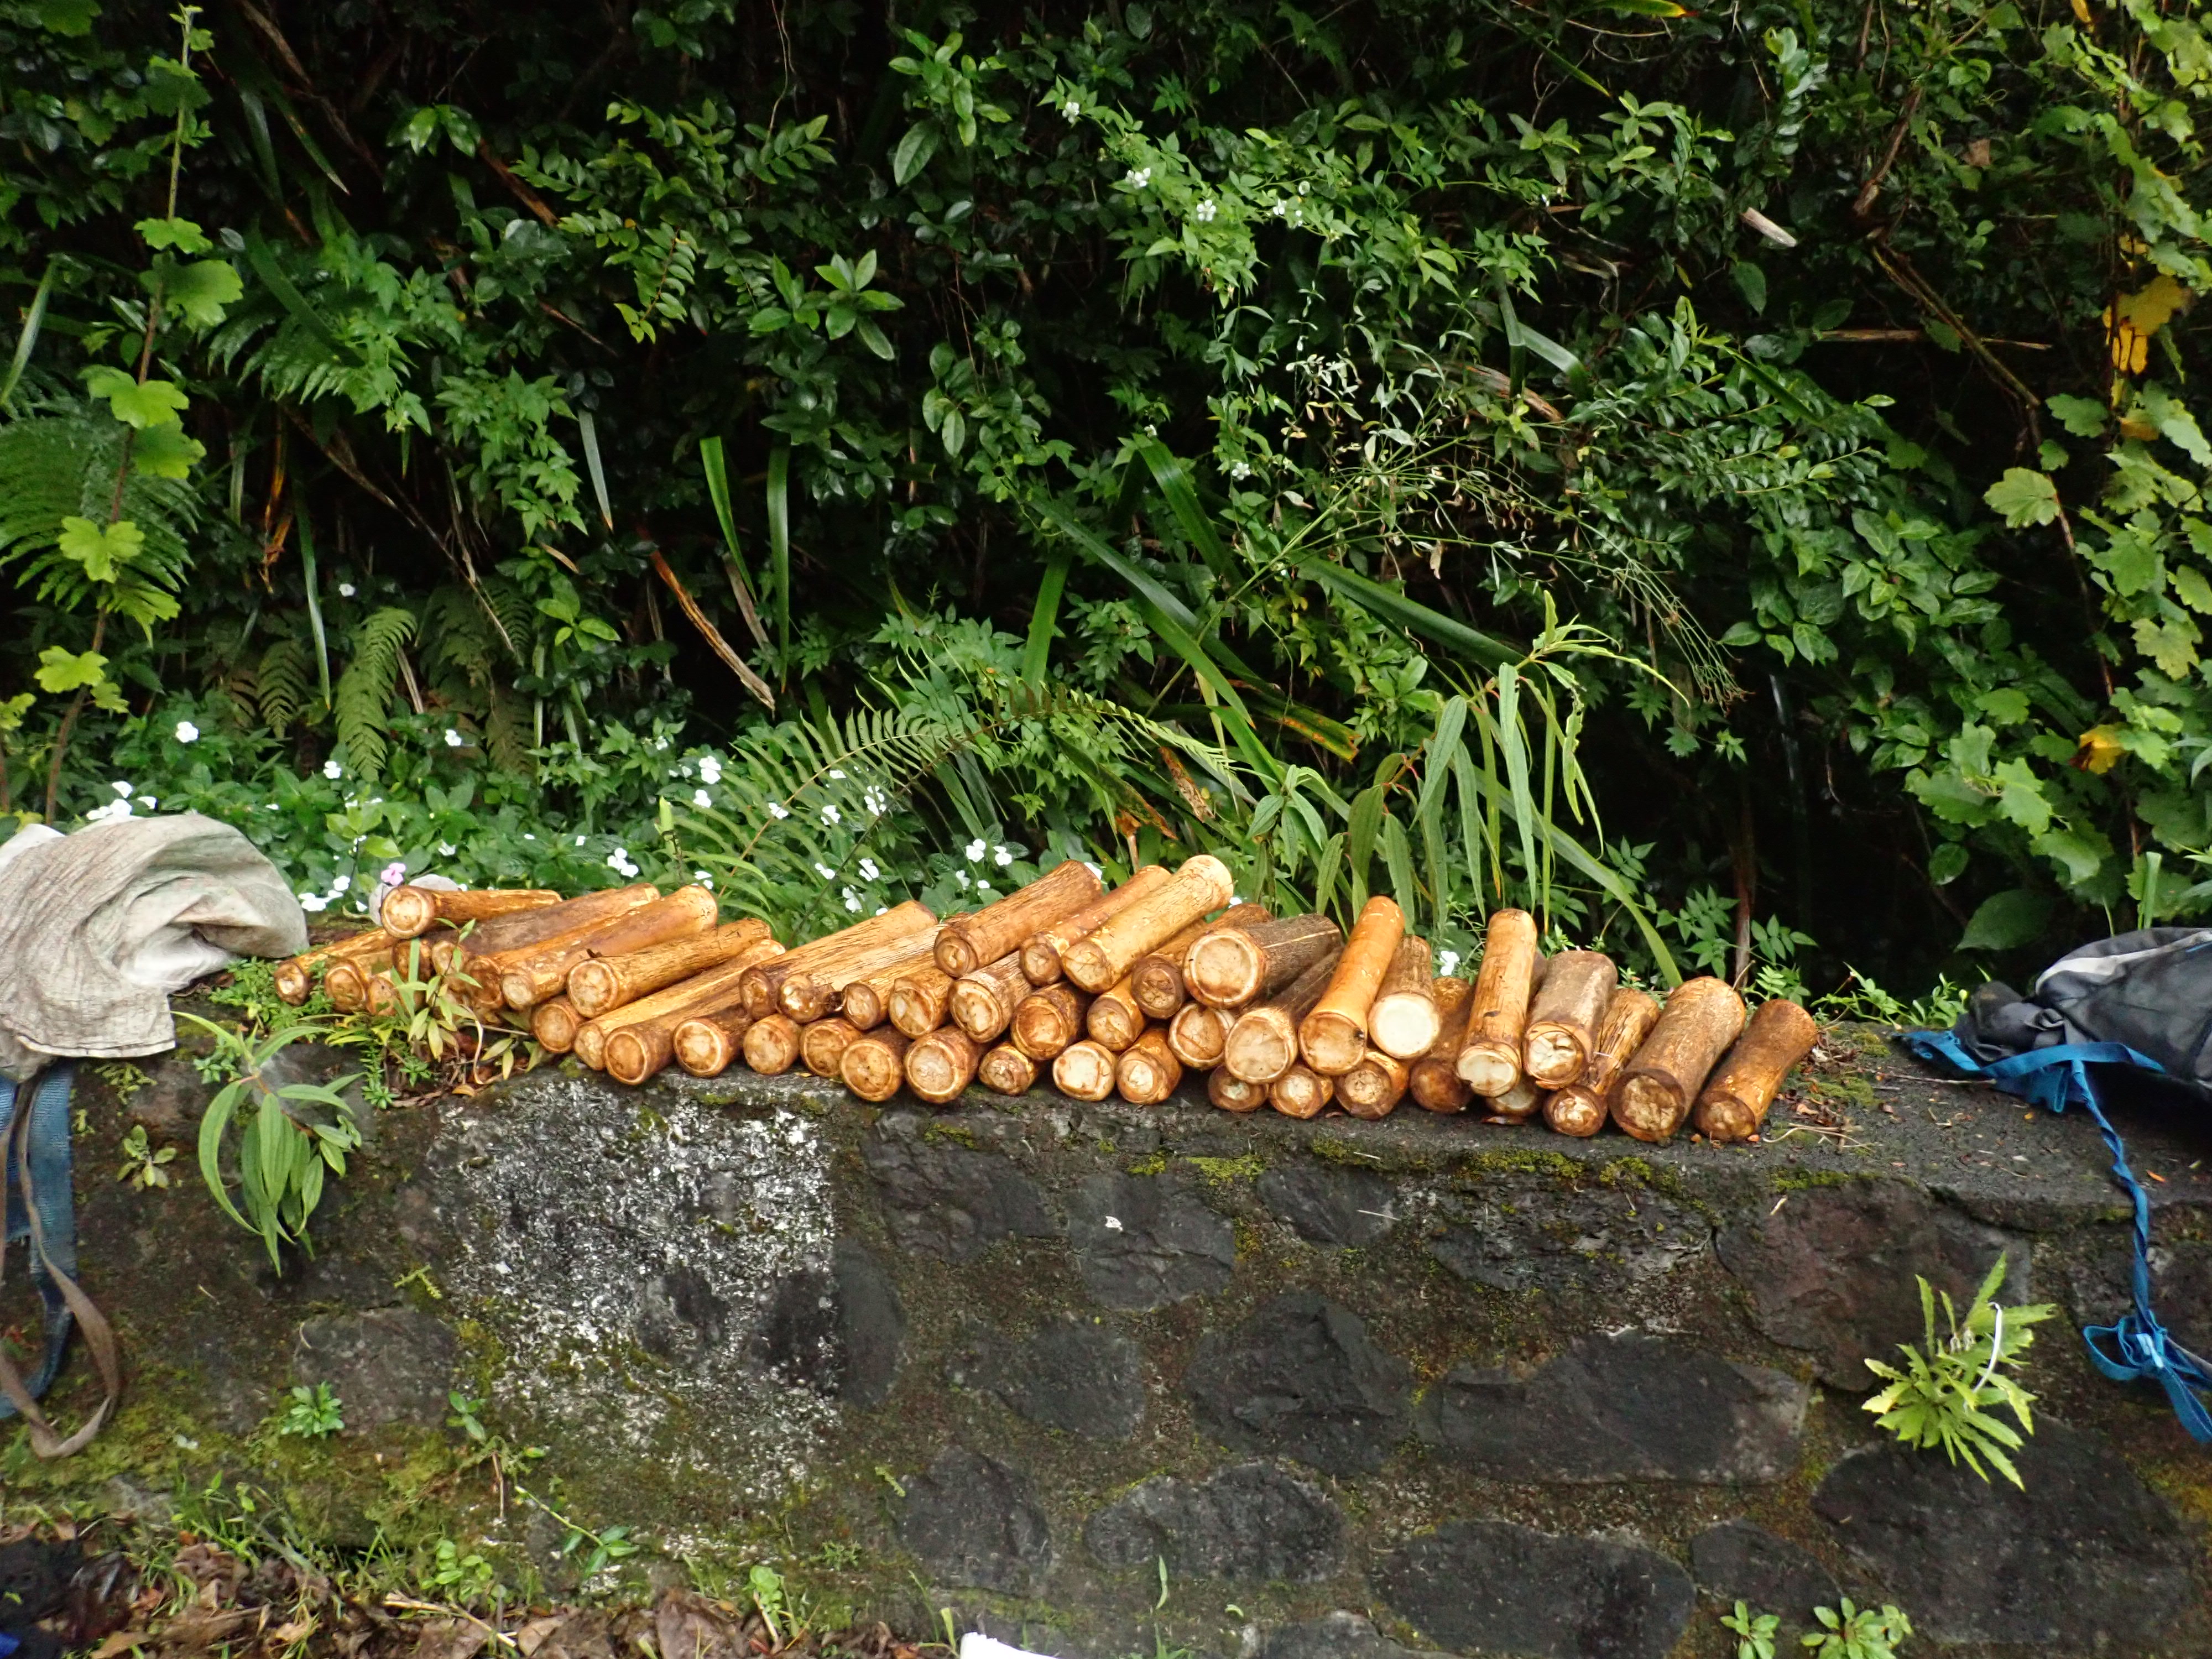 Choux de palmistes saisis au cours d'une affaire de braconnage en juin 2020 © Parc national de La Réunion